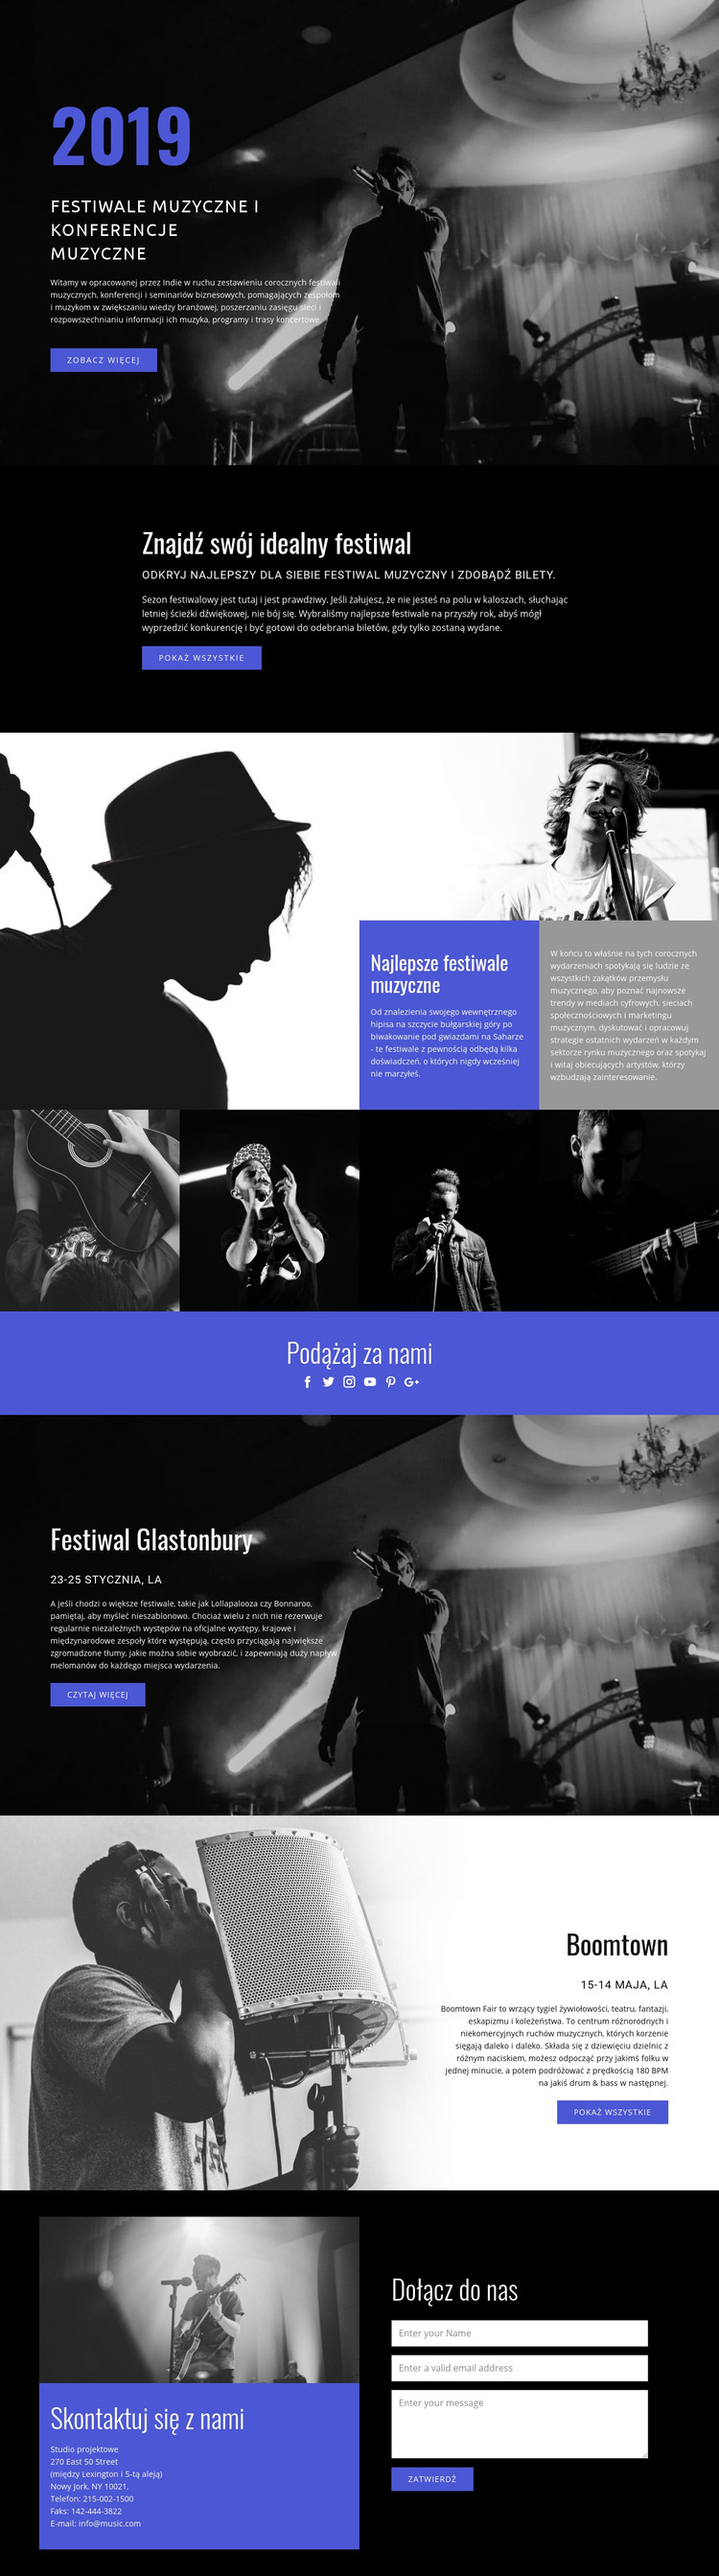 Festiwale muzyczne Szablon witryny sieci Web